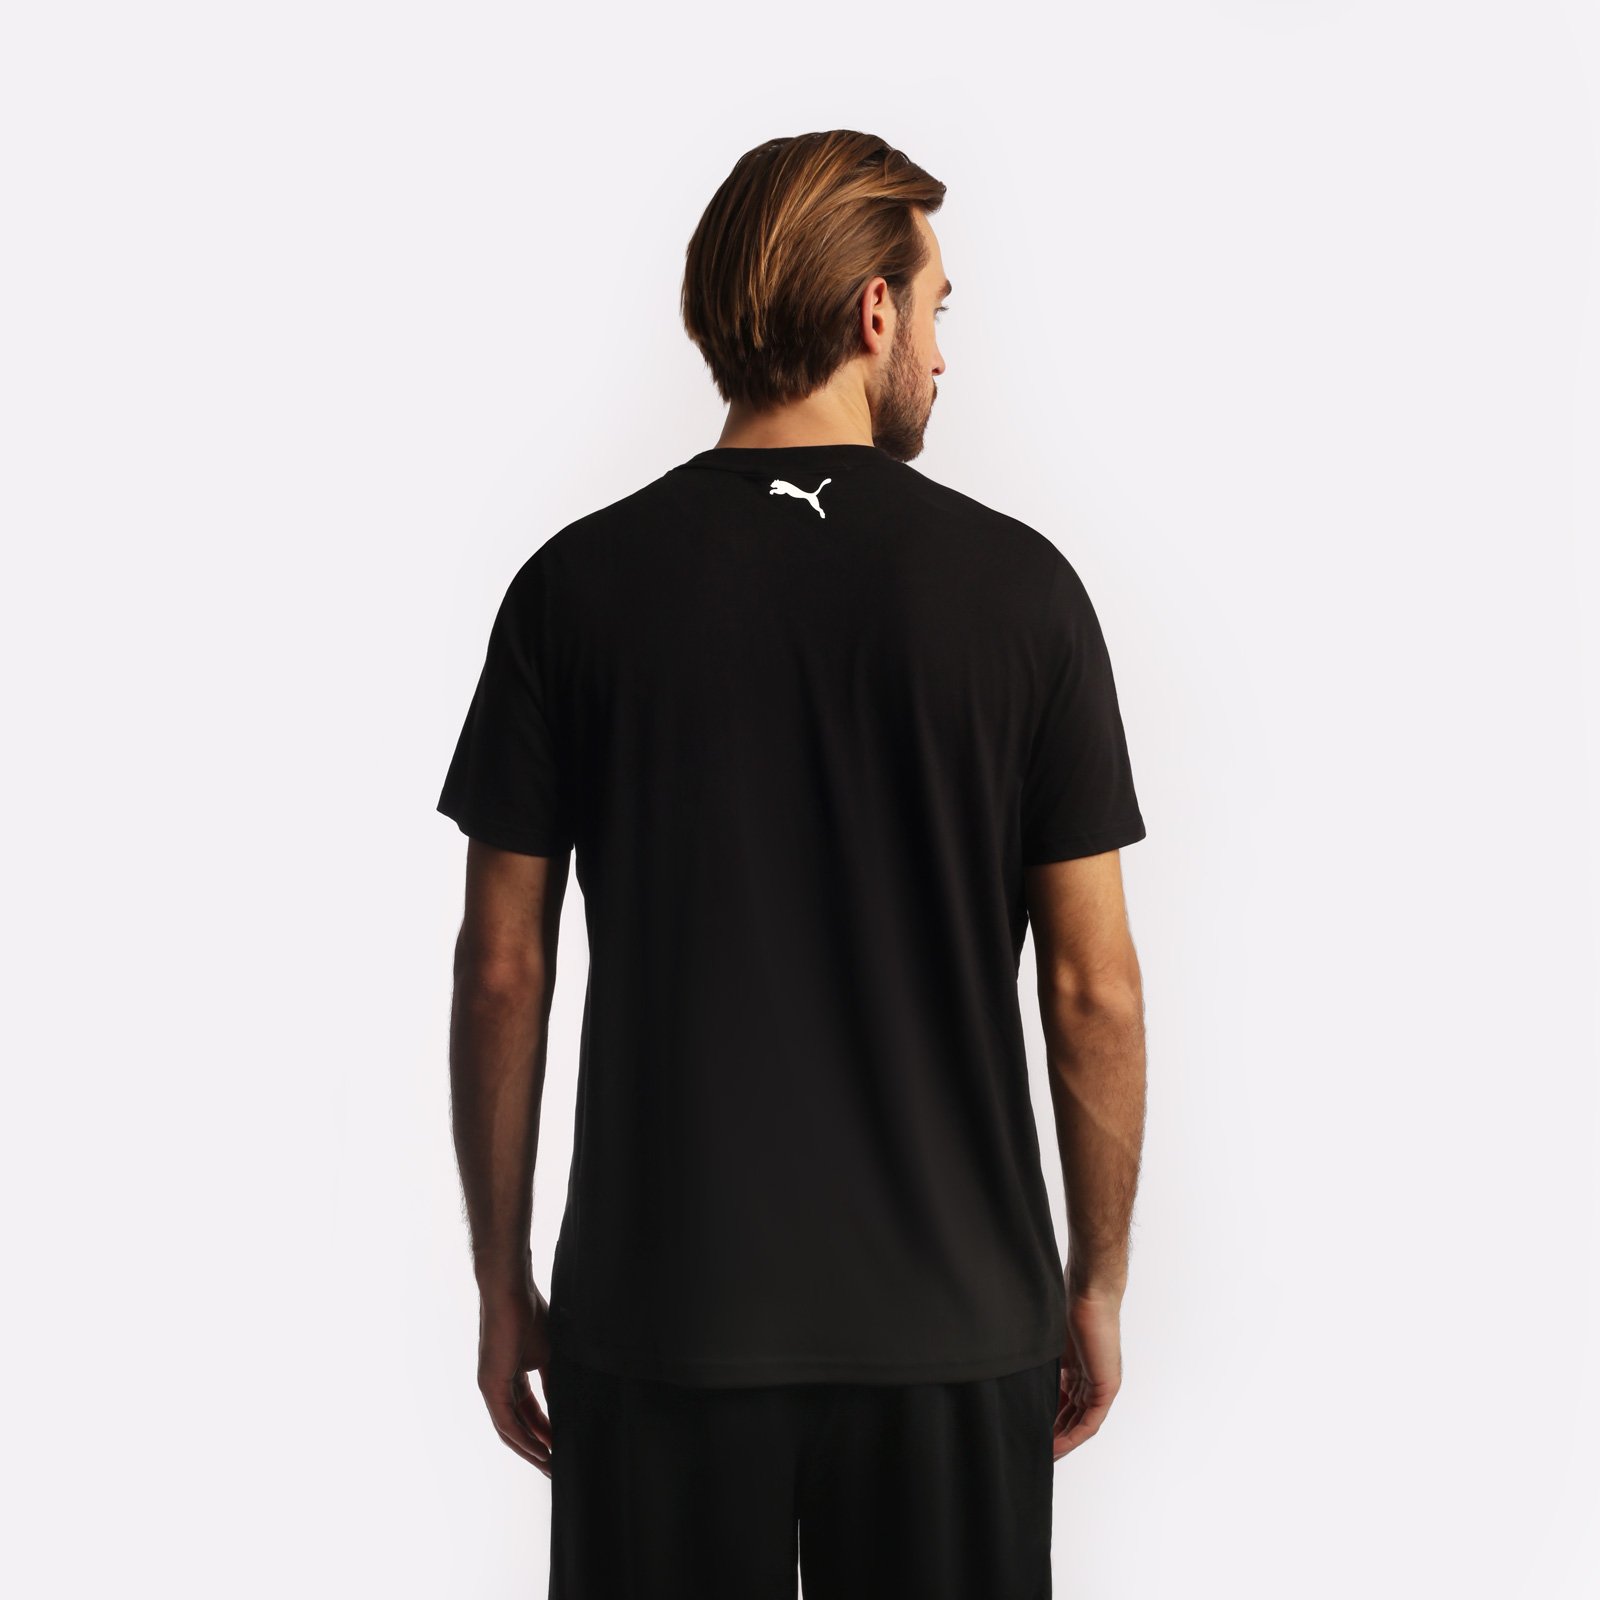 мужская черная футболка PUMA Perimeter Tee 1 53857301 - цена, описание, фото 2